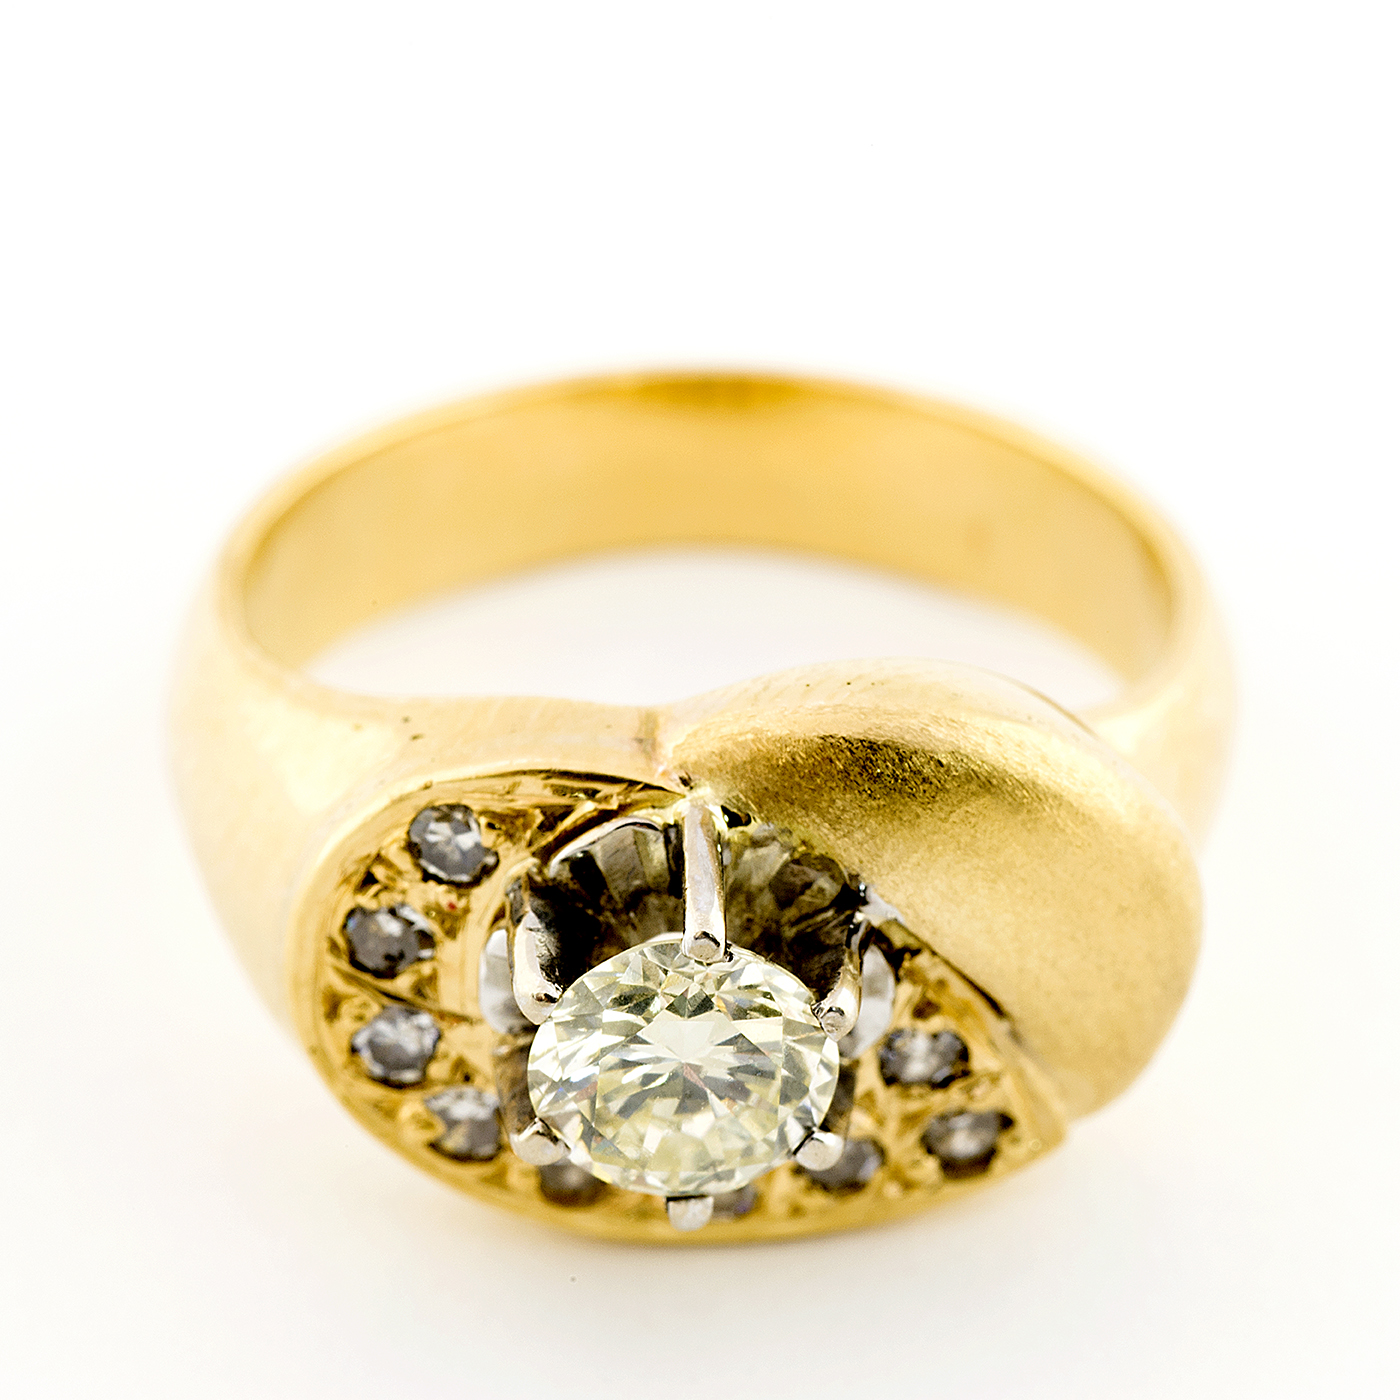 Sortija en Oro de 18k, con Diamante Talla Brillante L/VS2 de 0,56 ct. y Orla de 9 Brillantes L/VS2. (Certificado IGE), 17,5 mm